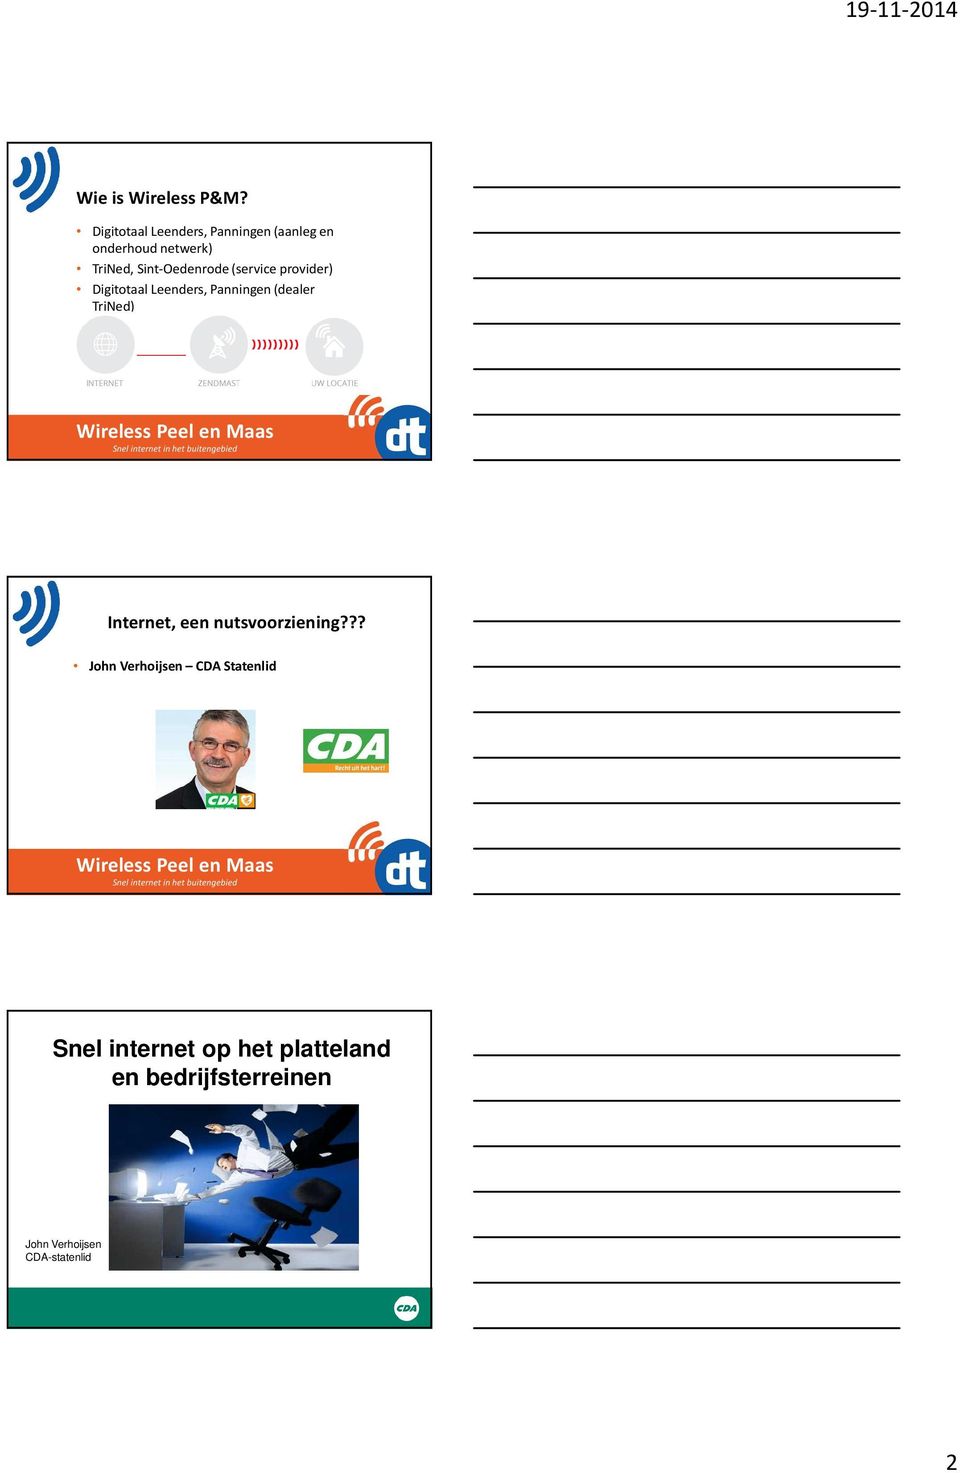 Sint-Oedenrode (service provider) DigitotaalLeenders, Panningen (dealer